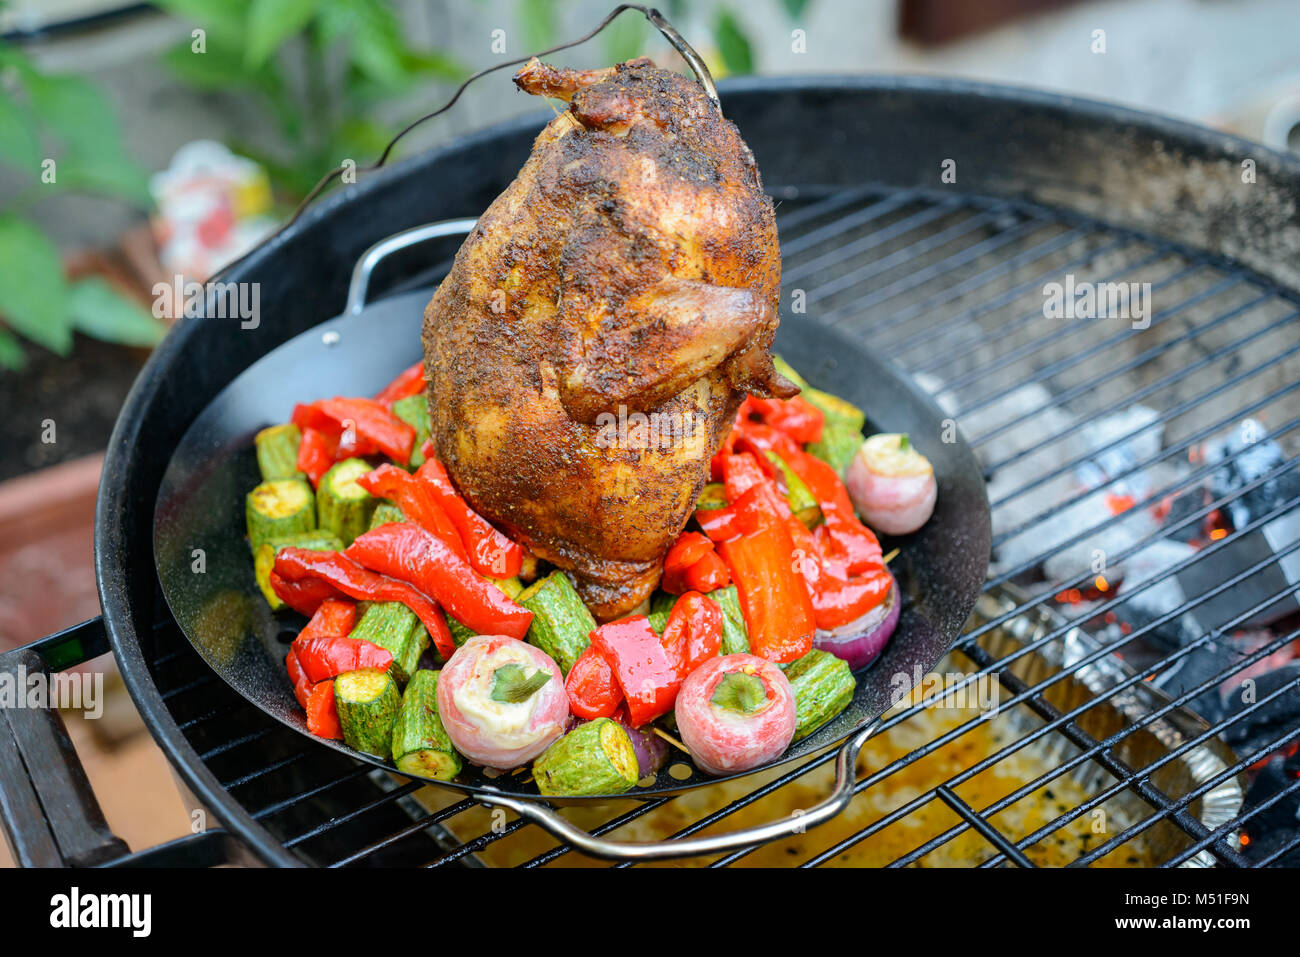 Grillen eine Bierdose Huhn in einem Grill, mit Paprikapulver einreiben und  Temperaturfühler, Gemüse in der Pfanne Stockfotografie - Alamy